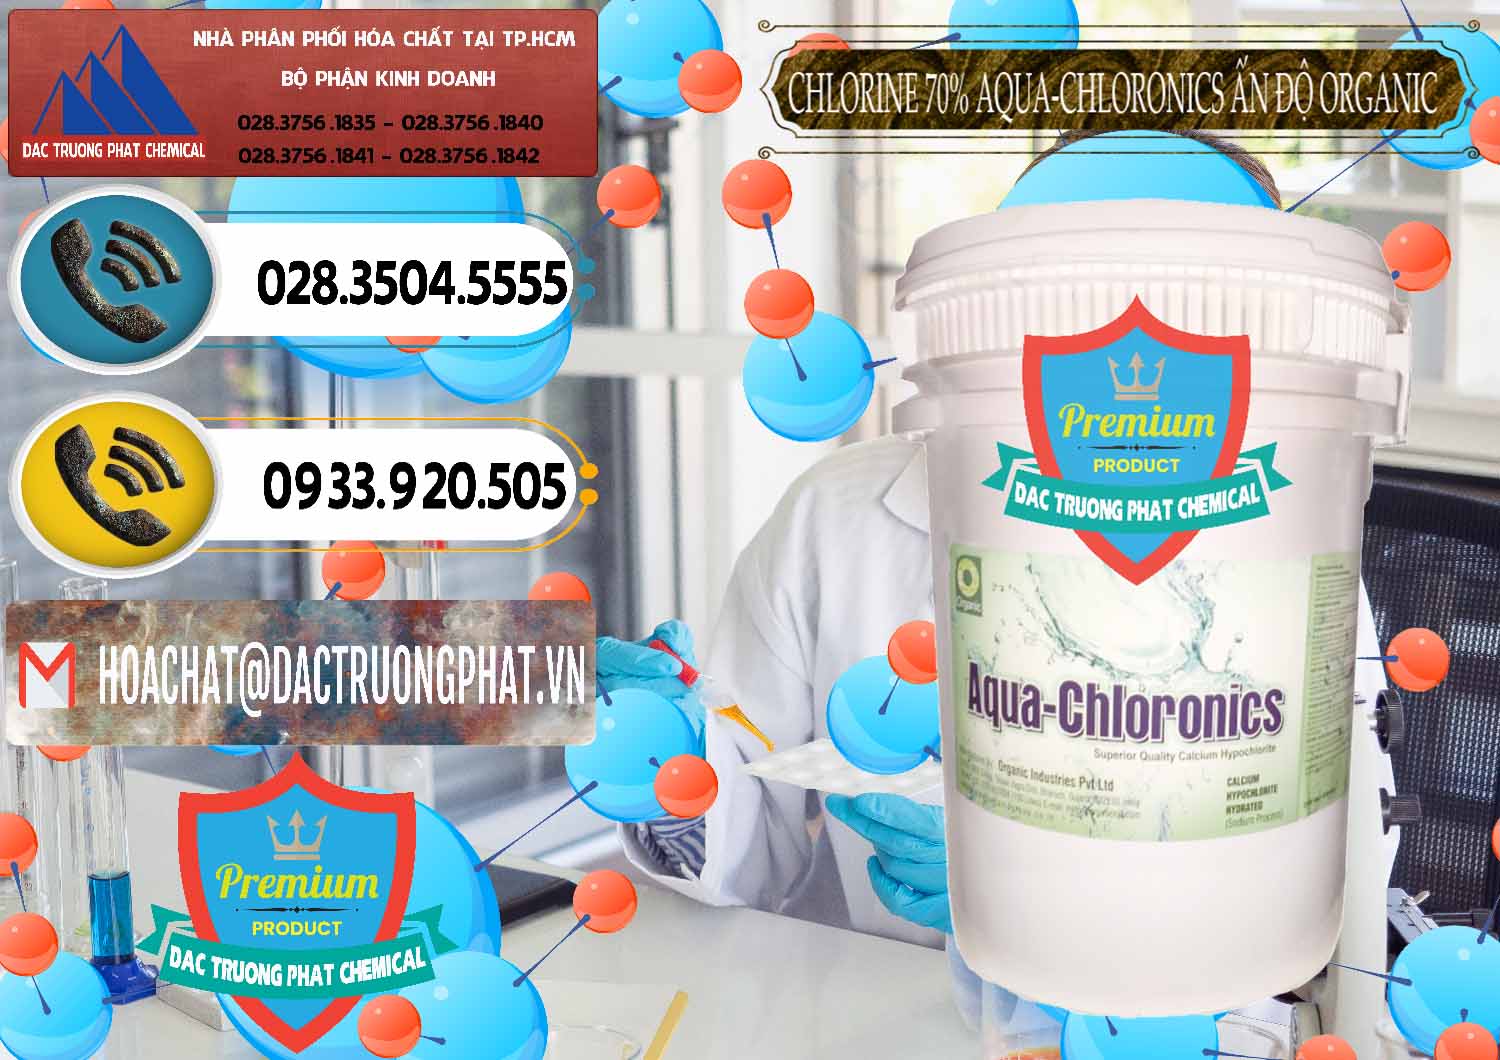 Chuyên nhập khẩu và bán Chlorine – Clorin 70% Aqua-Chloronics Ấn Độ Organic India - 0211 - Cung cấp _ kinh doanh hóa chất tại TP.HCM - hoachatdetnhuom.vn